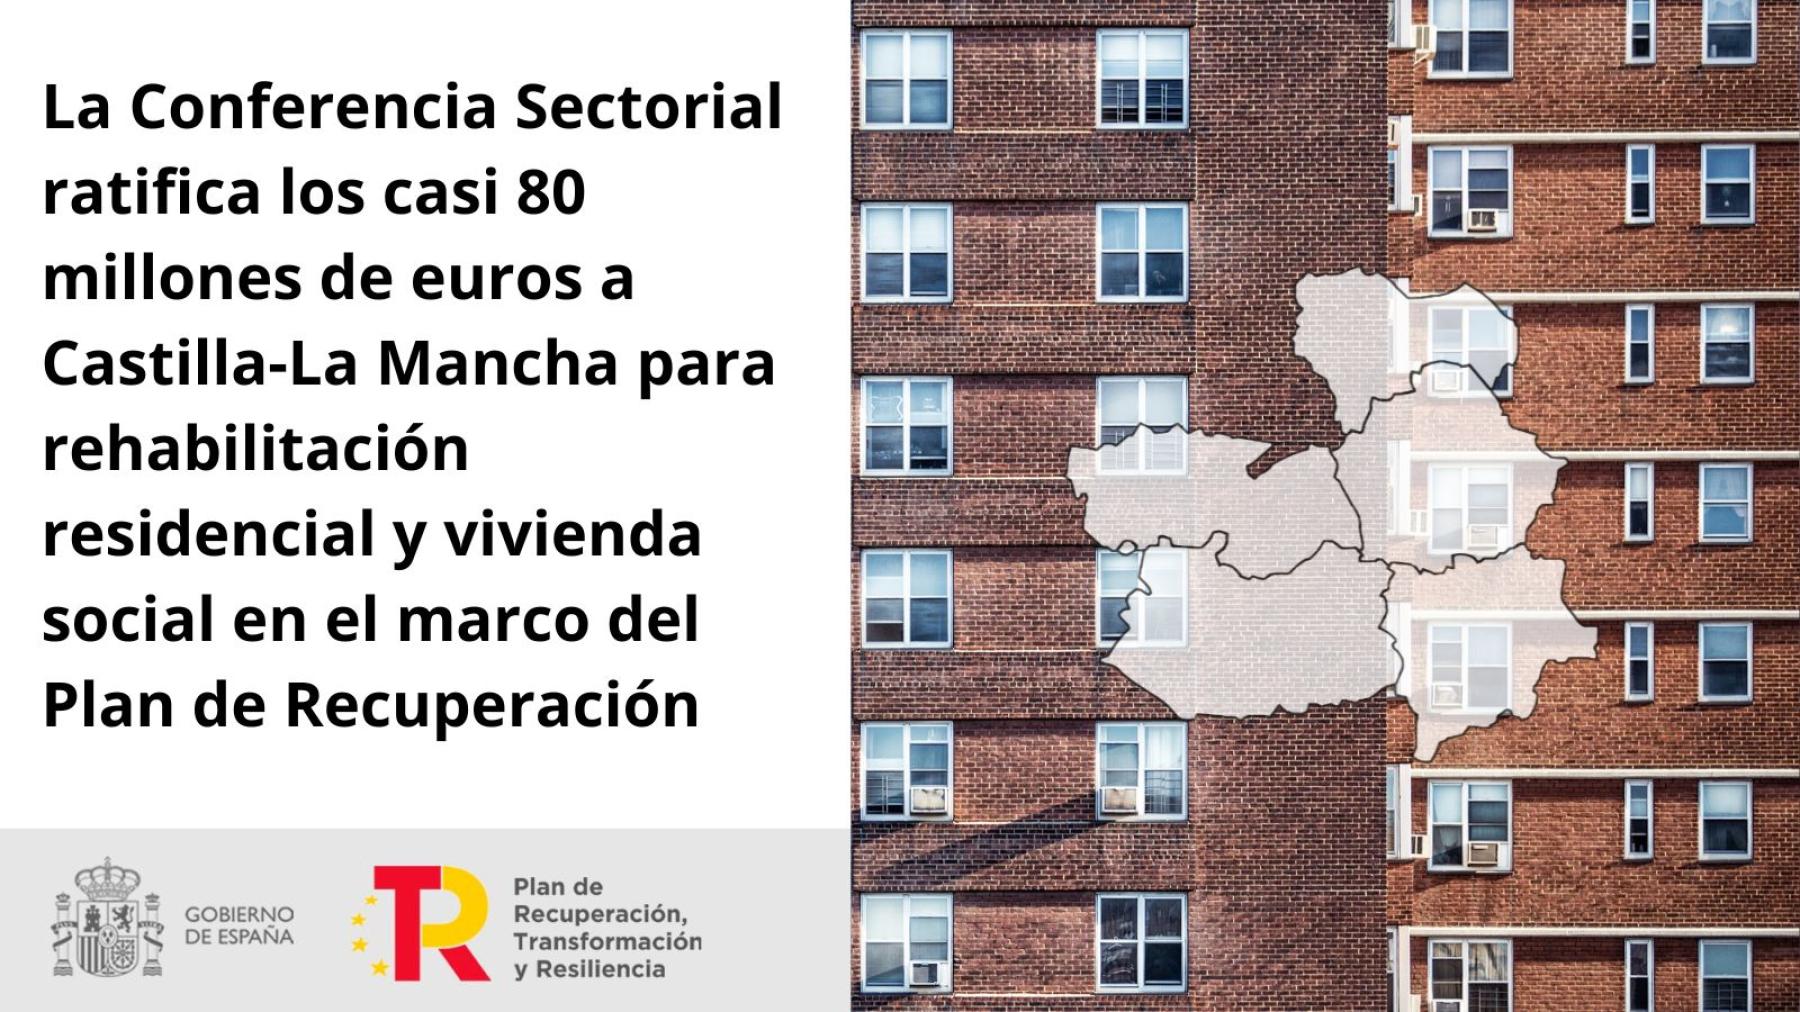 La Conferencia Sectorial ratifica los casi 80 millones de euros a Castilla-La Mancha para rehabilitación residencial y vivienda social en el marco del Plan de Recuperación